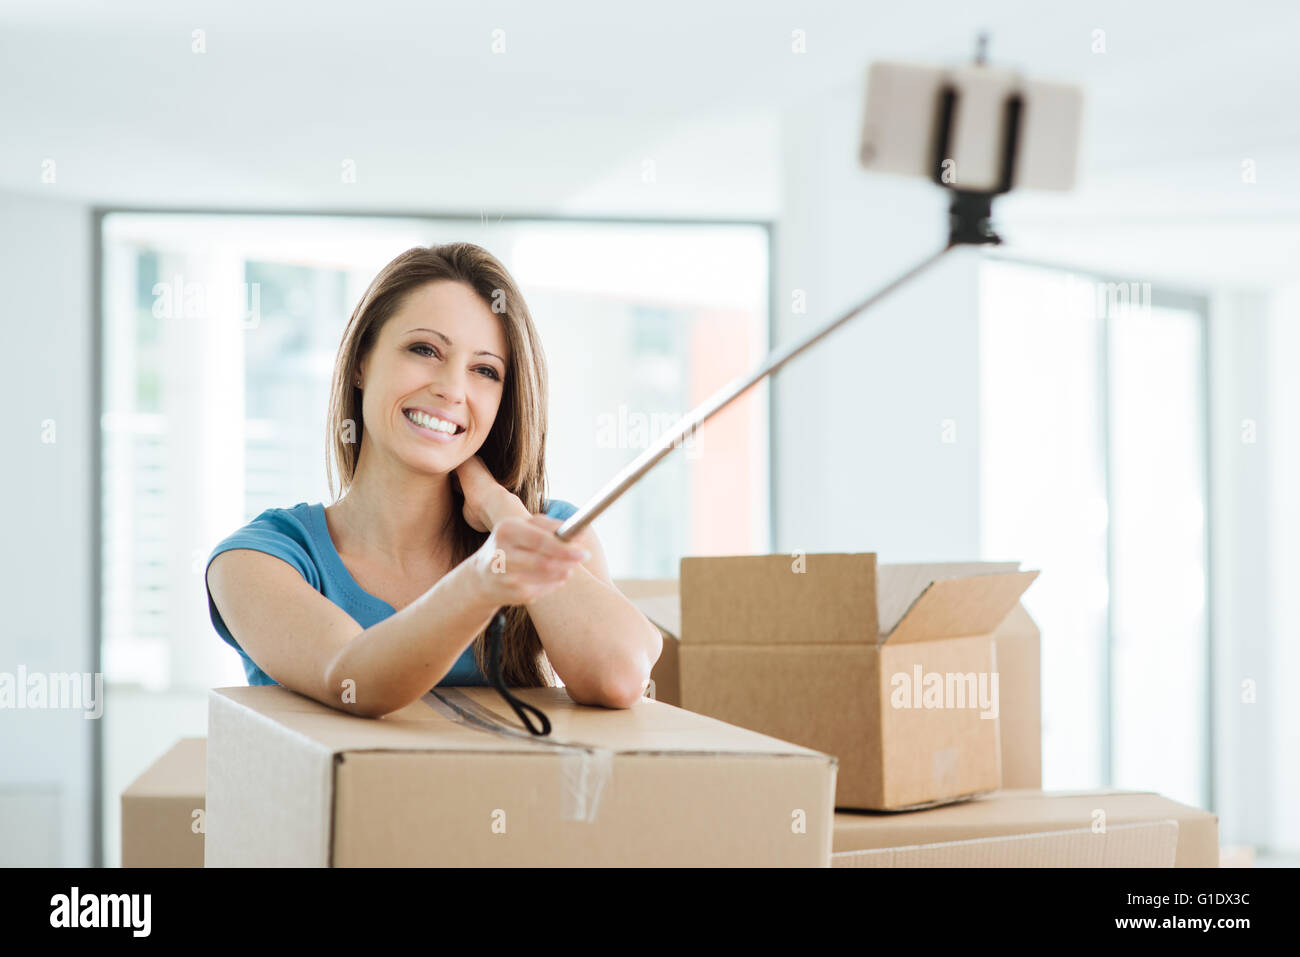 Lächelnde junge Frau bewegt sich in ihrem neuen Haus und unter Selfies mit einem Selfie-stick Stockfoto